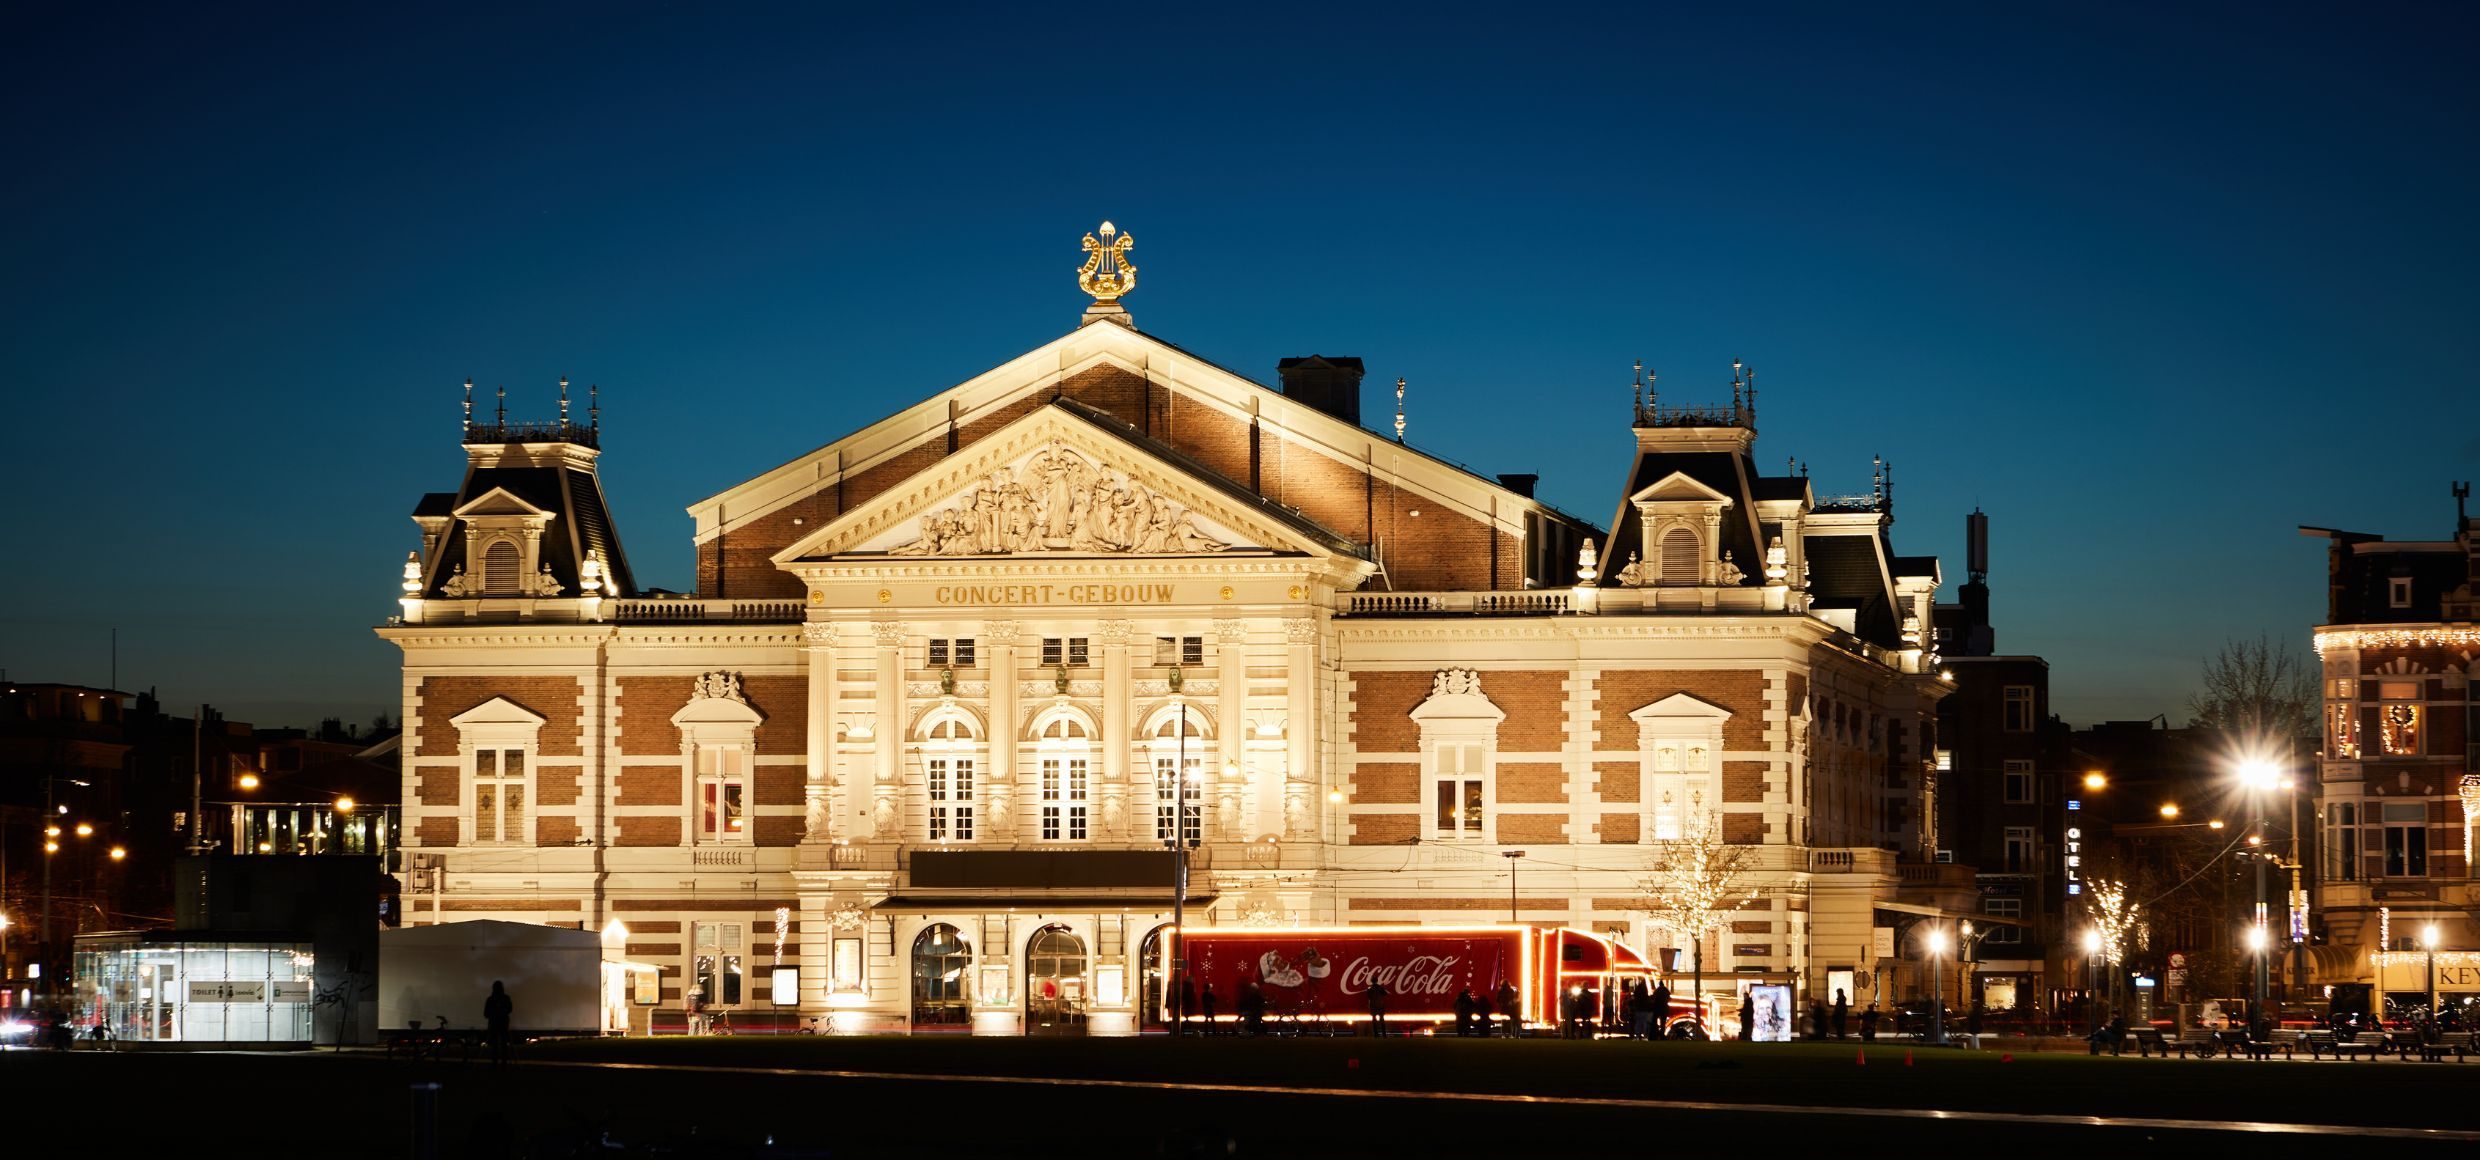 Niederlande Amsterdam Concertgebouw außenansicht